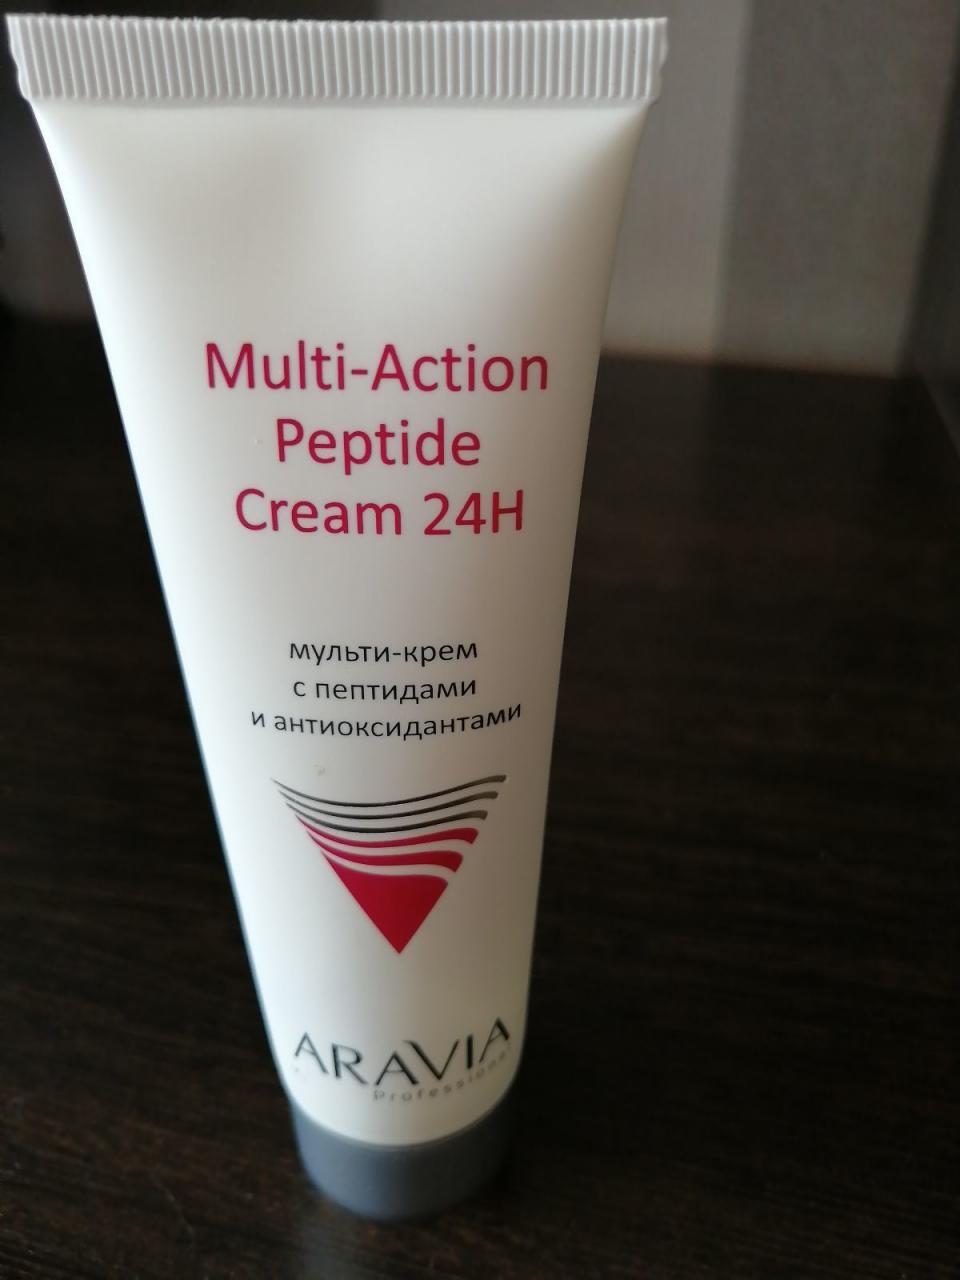 Отзыв на товар: Мульти-крем для лица с пептидами и антиоксидантным комплексом Multi-Action Peptide Cream. Aravia Professional.